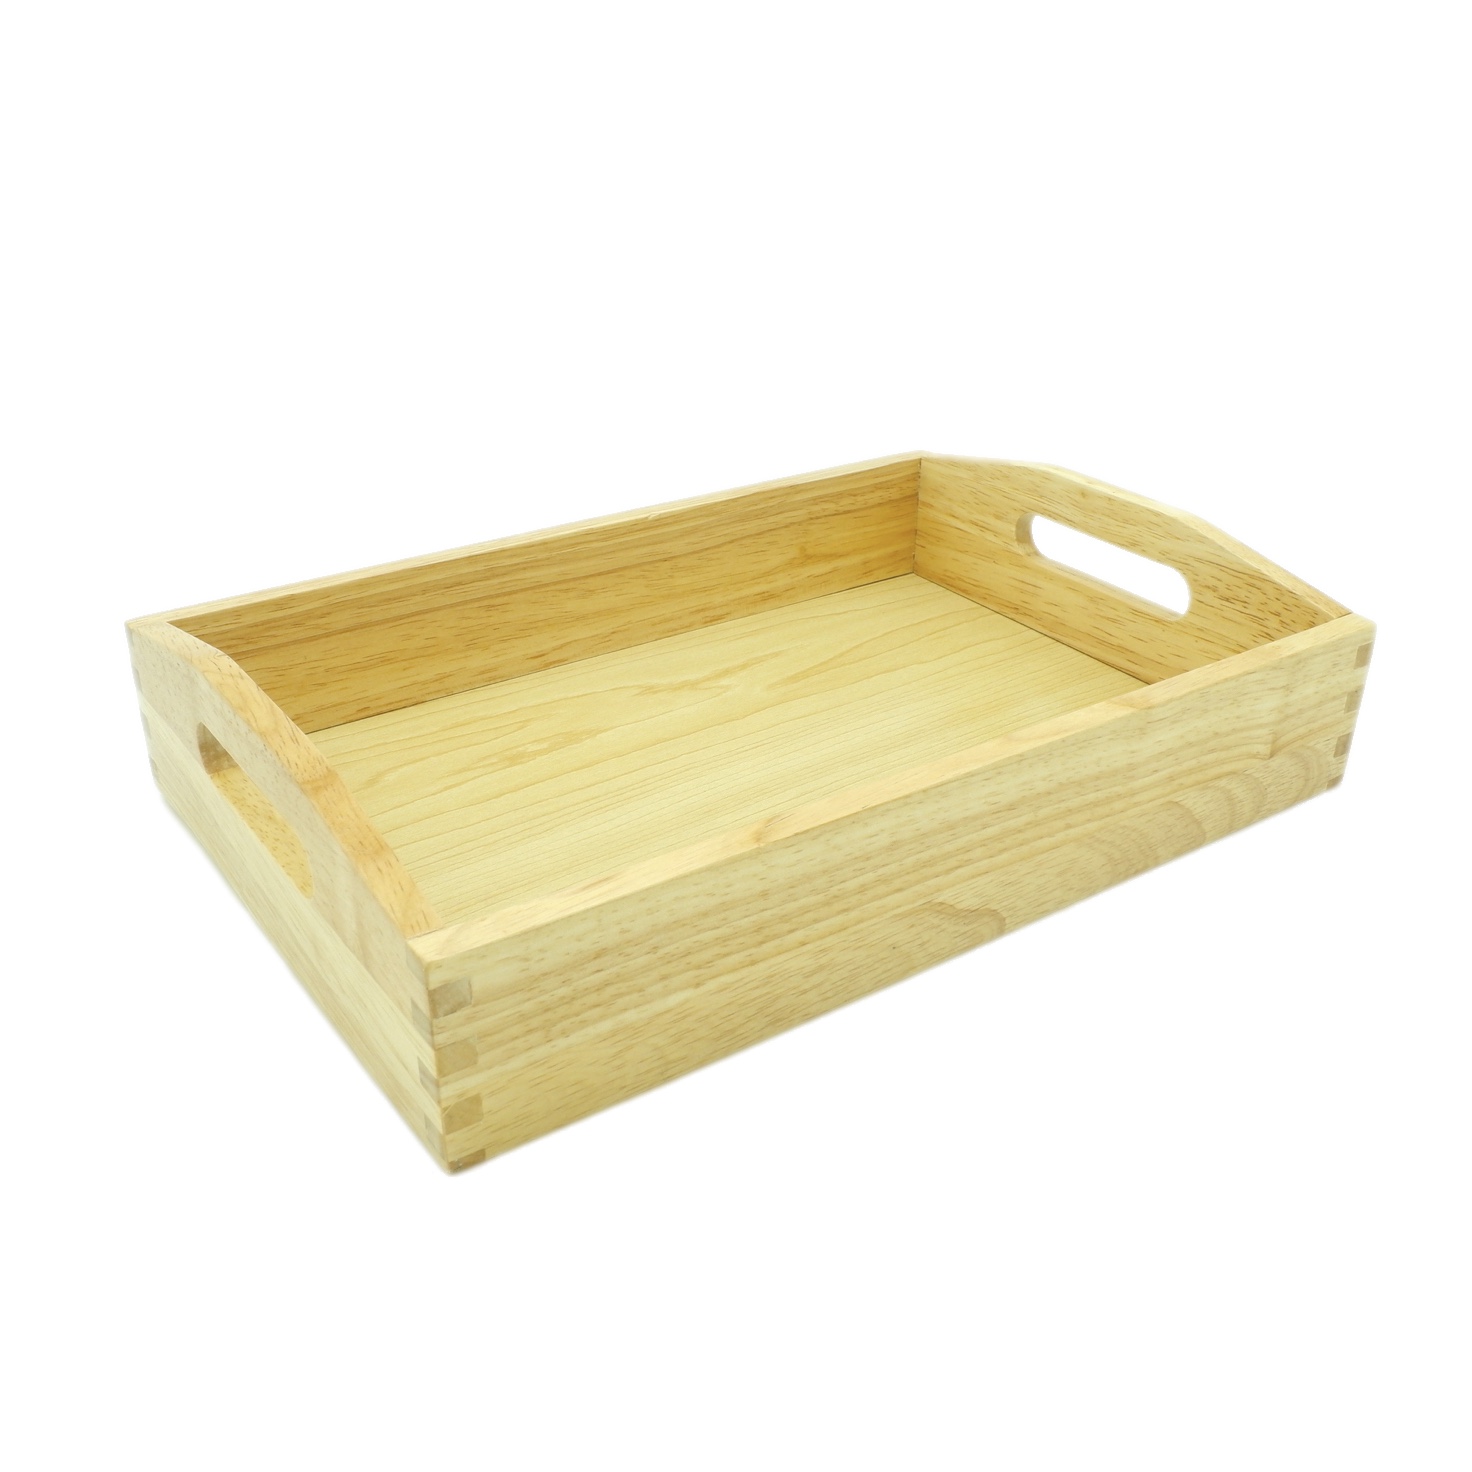 Wooden Tray: Medium